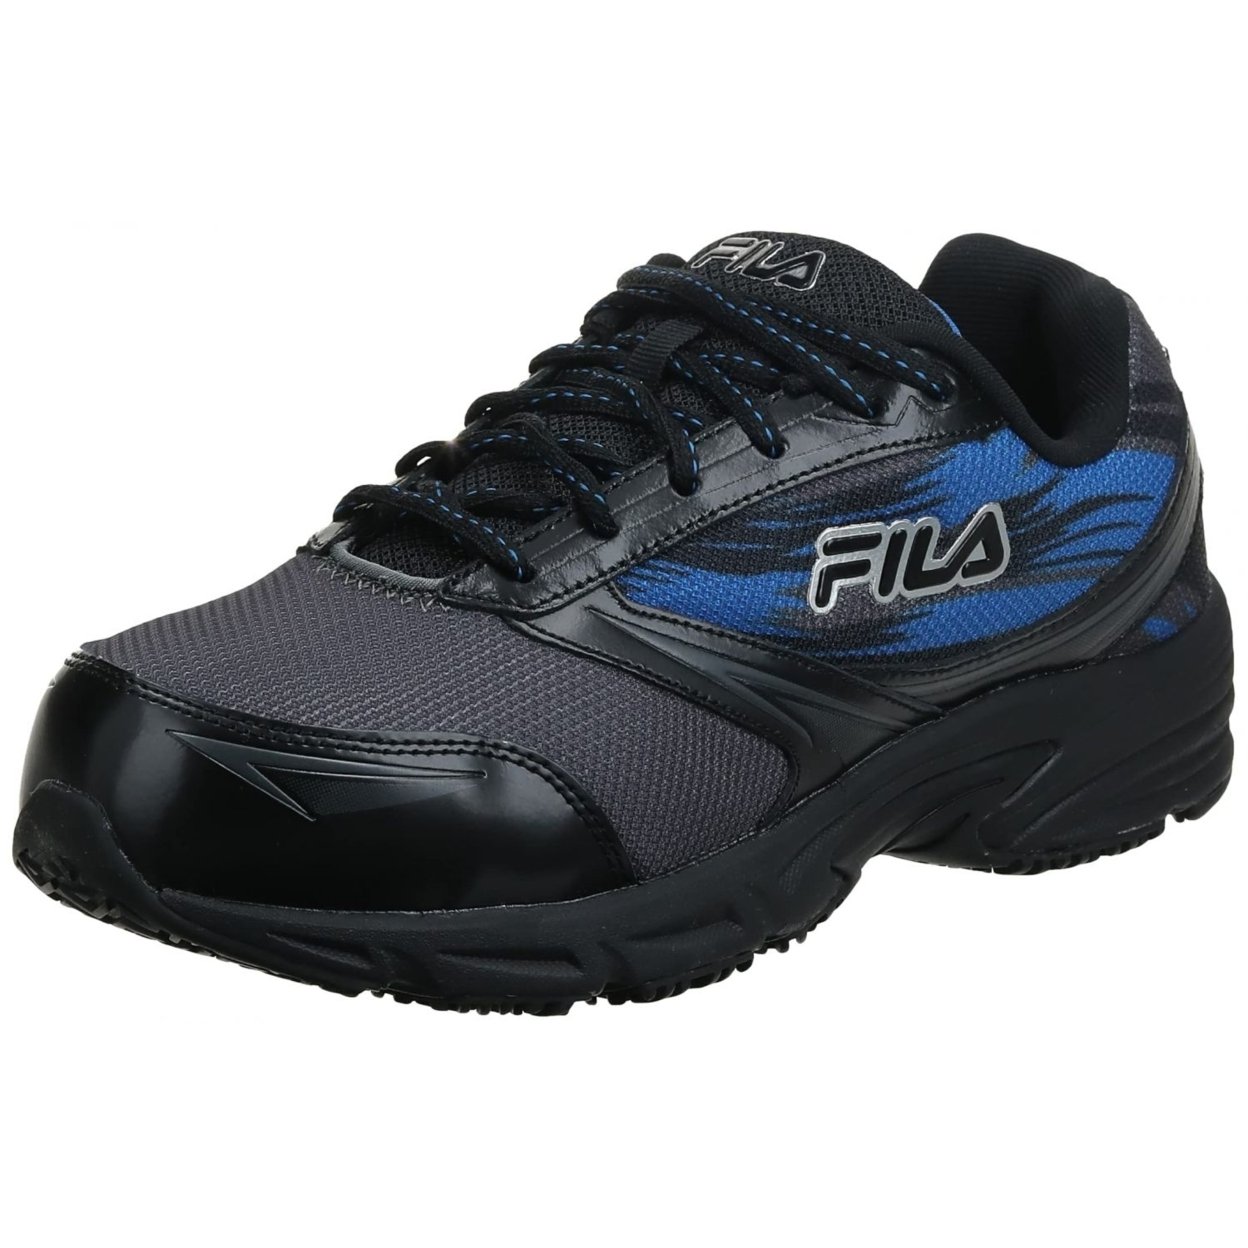 Fila Menâs Memory Meiera 2 Slip Resistant And Composite Toe Work Shoe CSRK/BLK/PRBL - Castlerock/Black/Prince Blue, 9